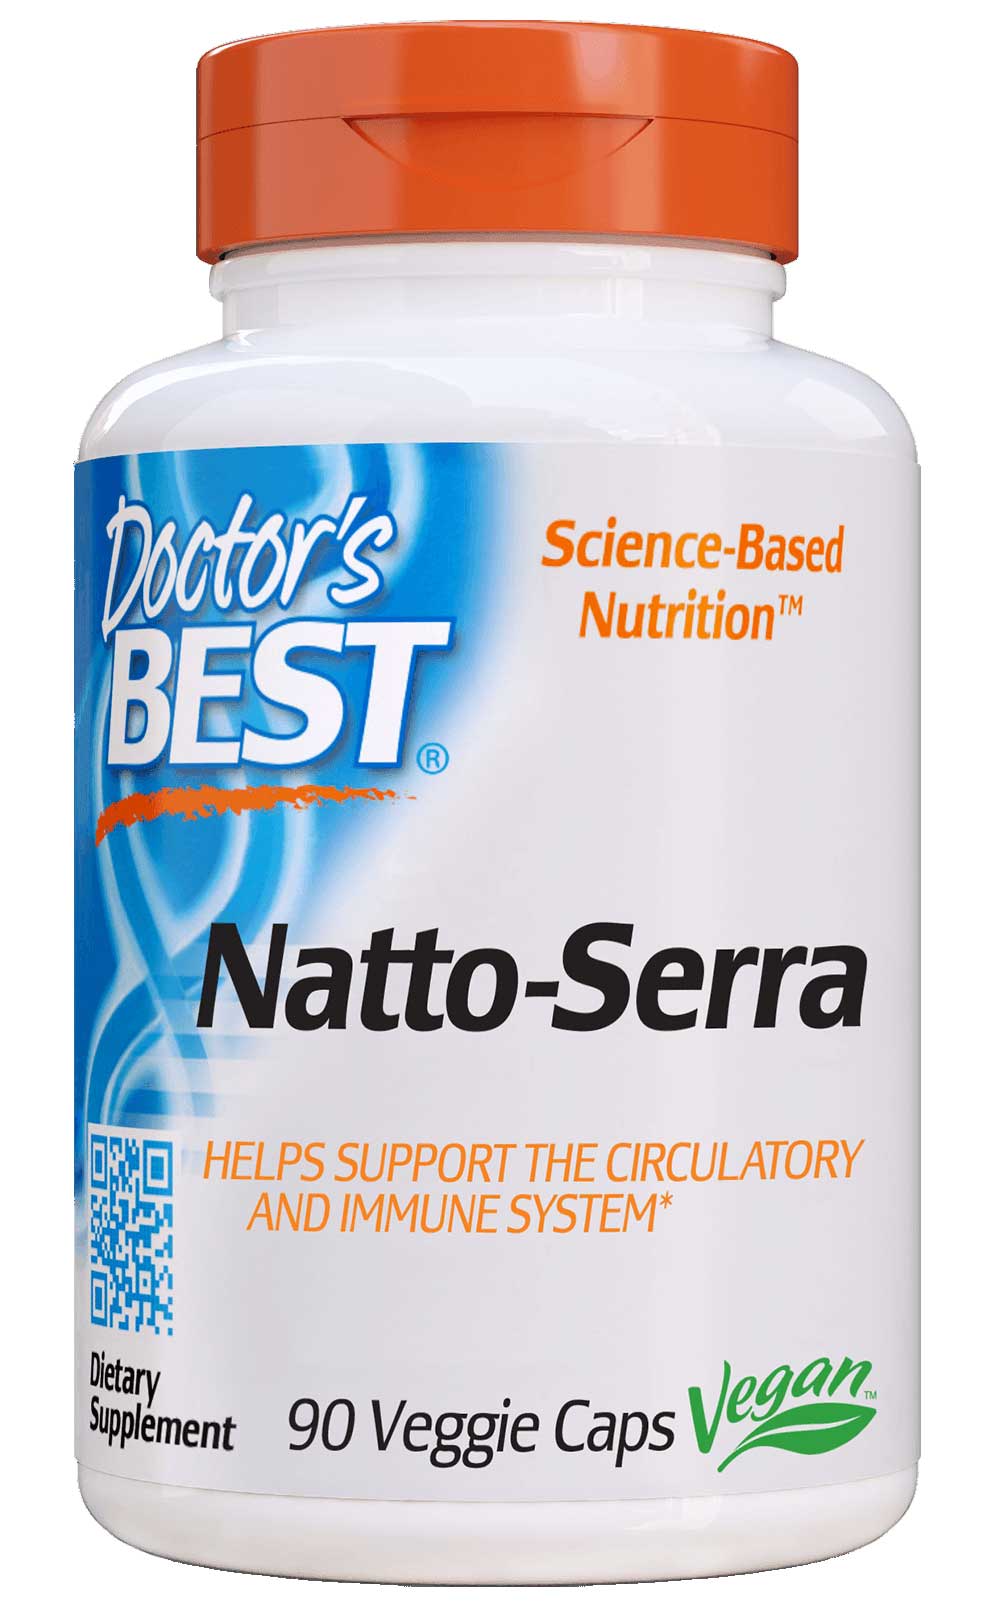 Doctor's Best Natto-Serra